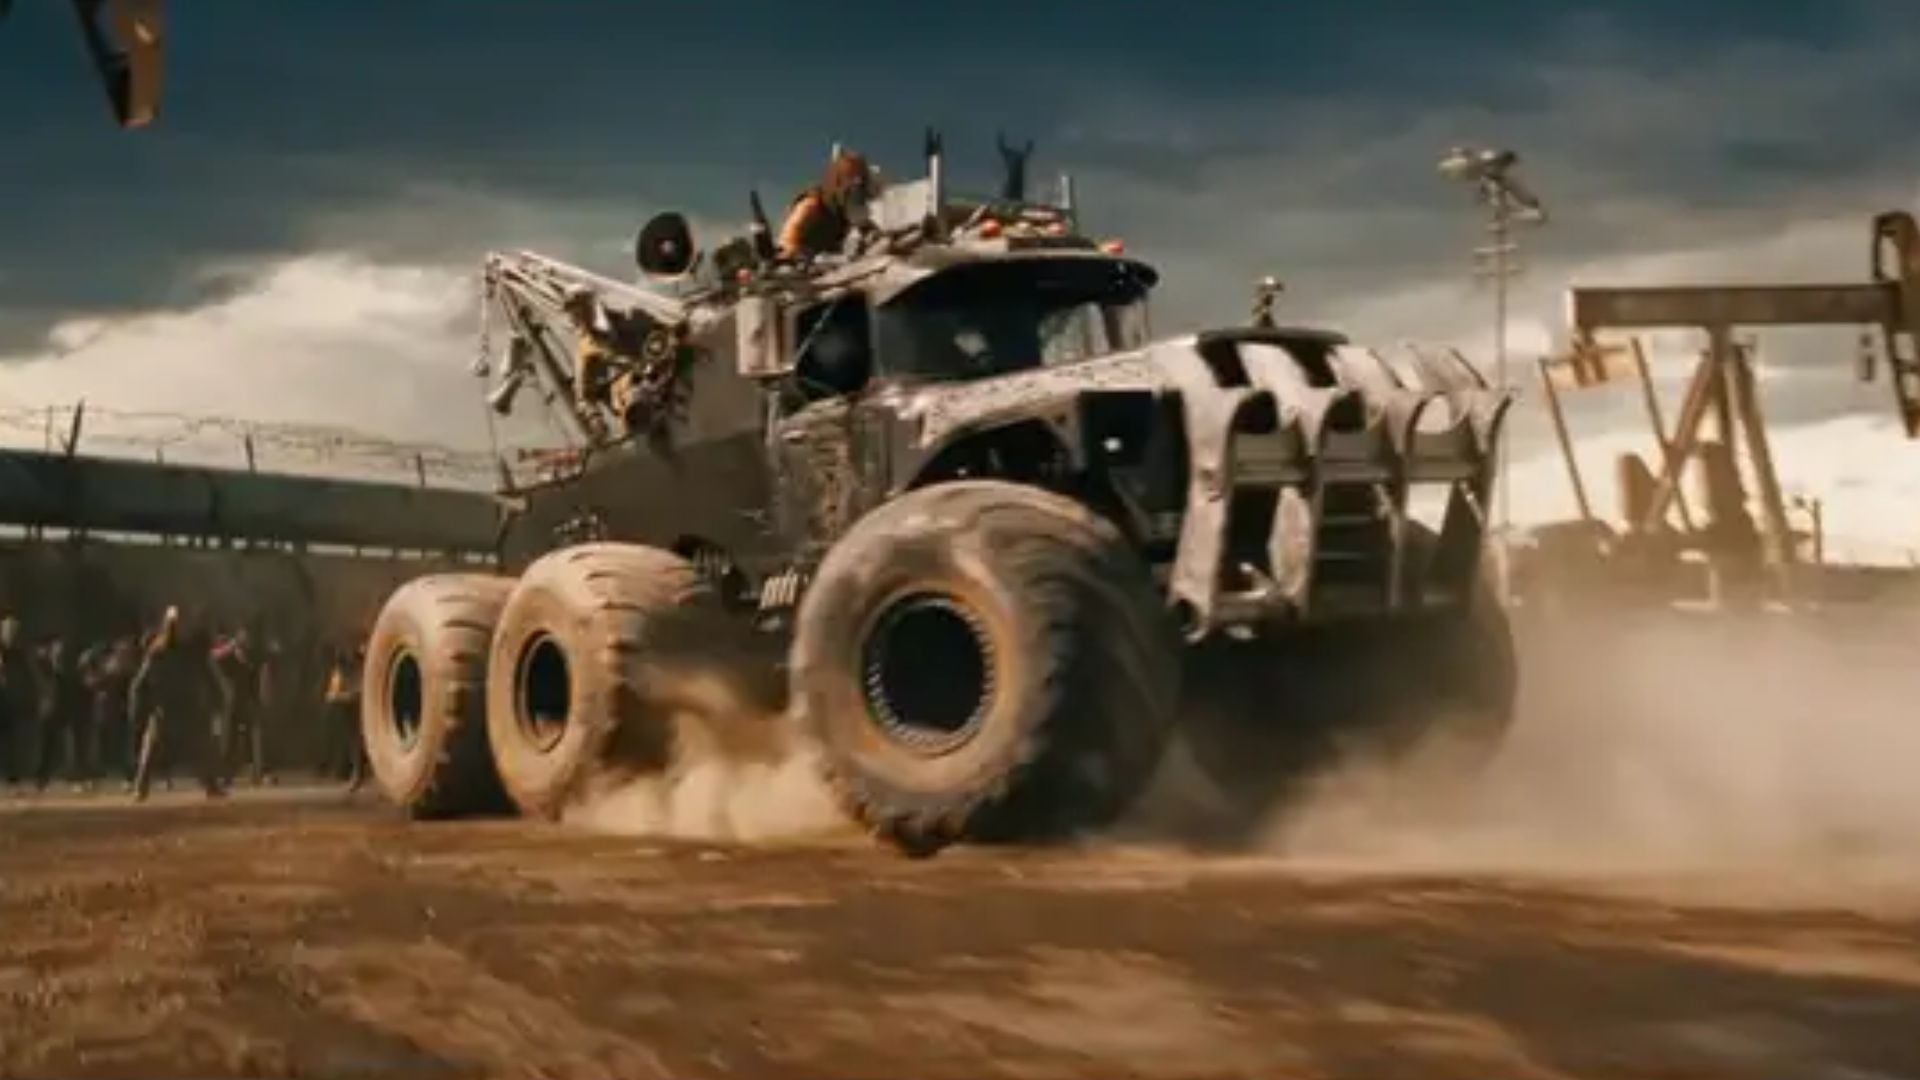 Las reacciones dejan ver lo mucho que impresionó Furiosa y la referencia a su película previa de 2015, Mad Max: furia en el camino.